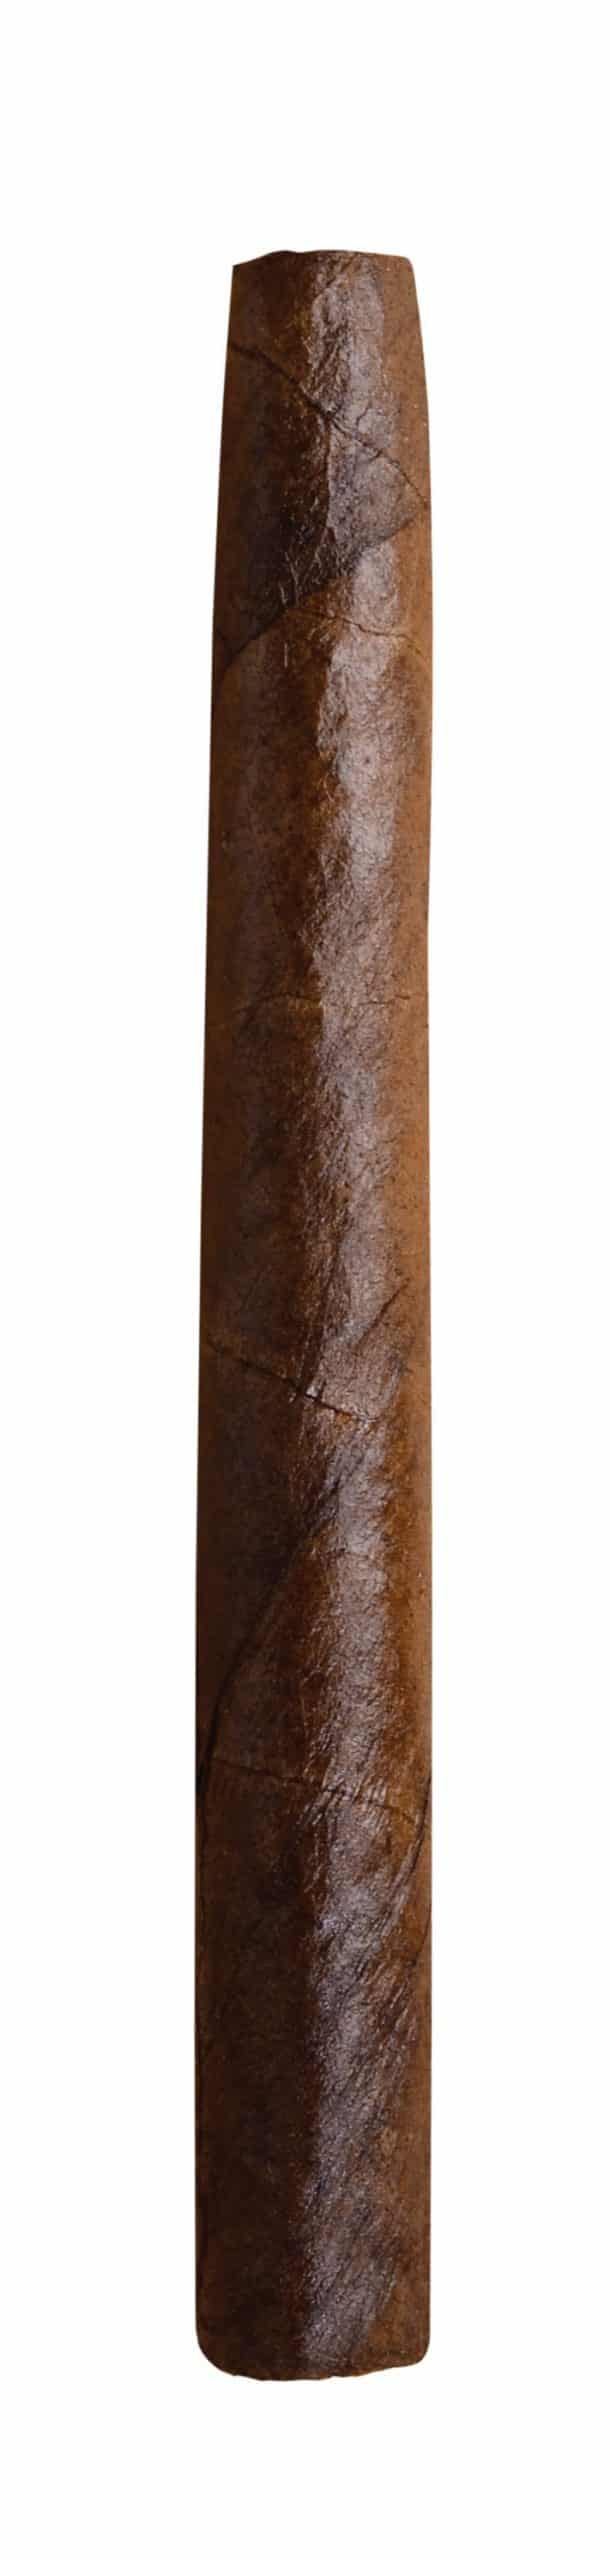 dutch delites brasil single cigar